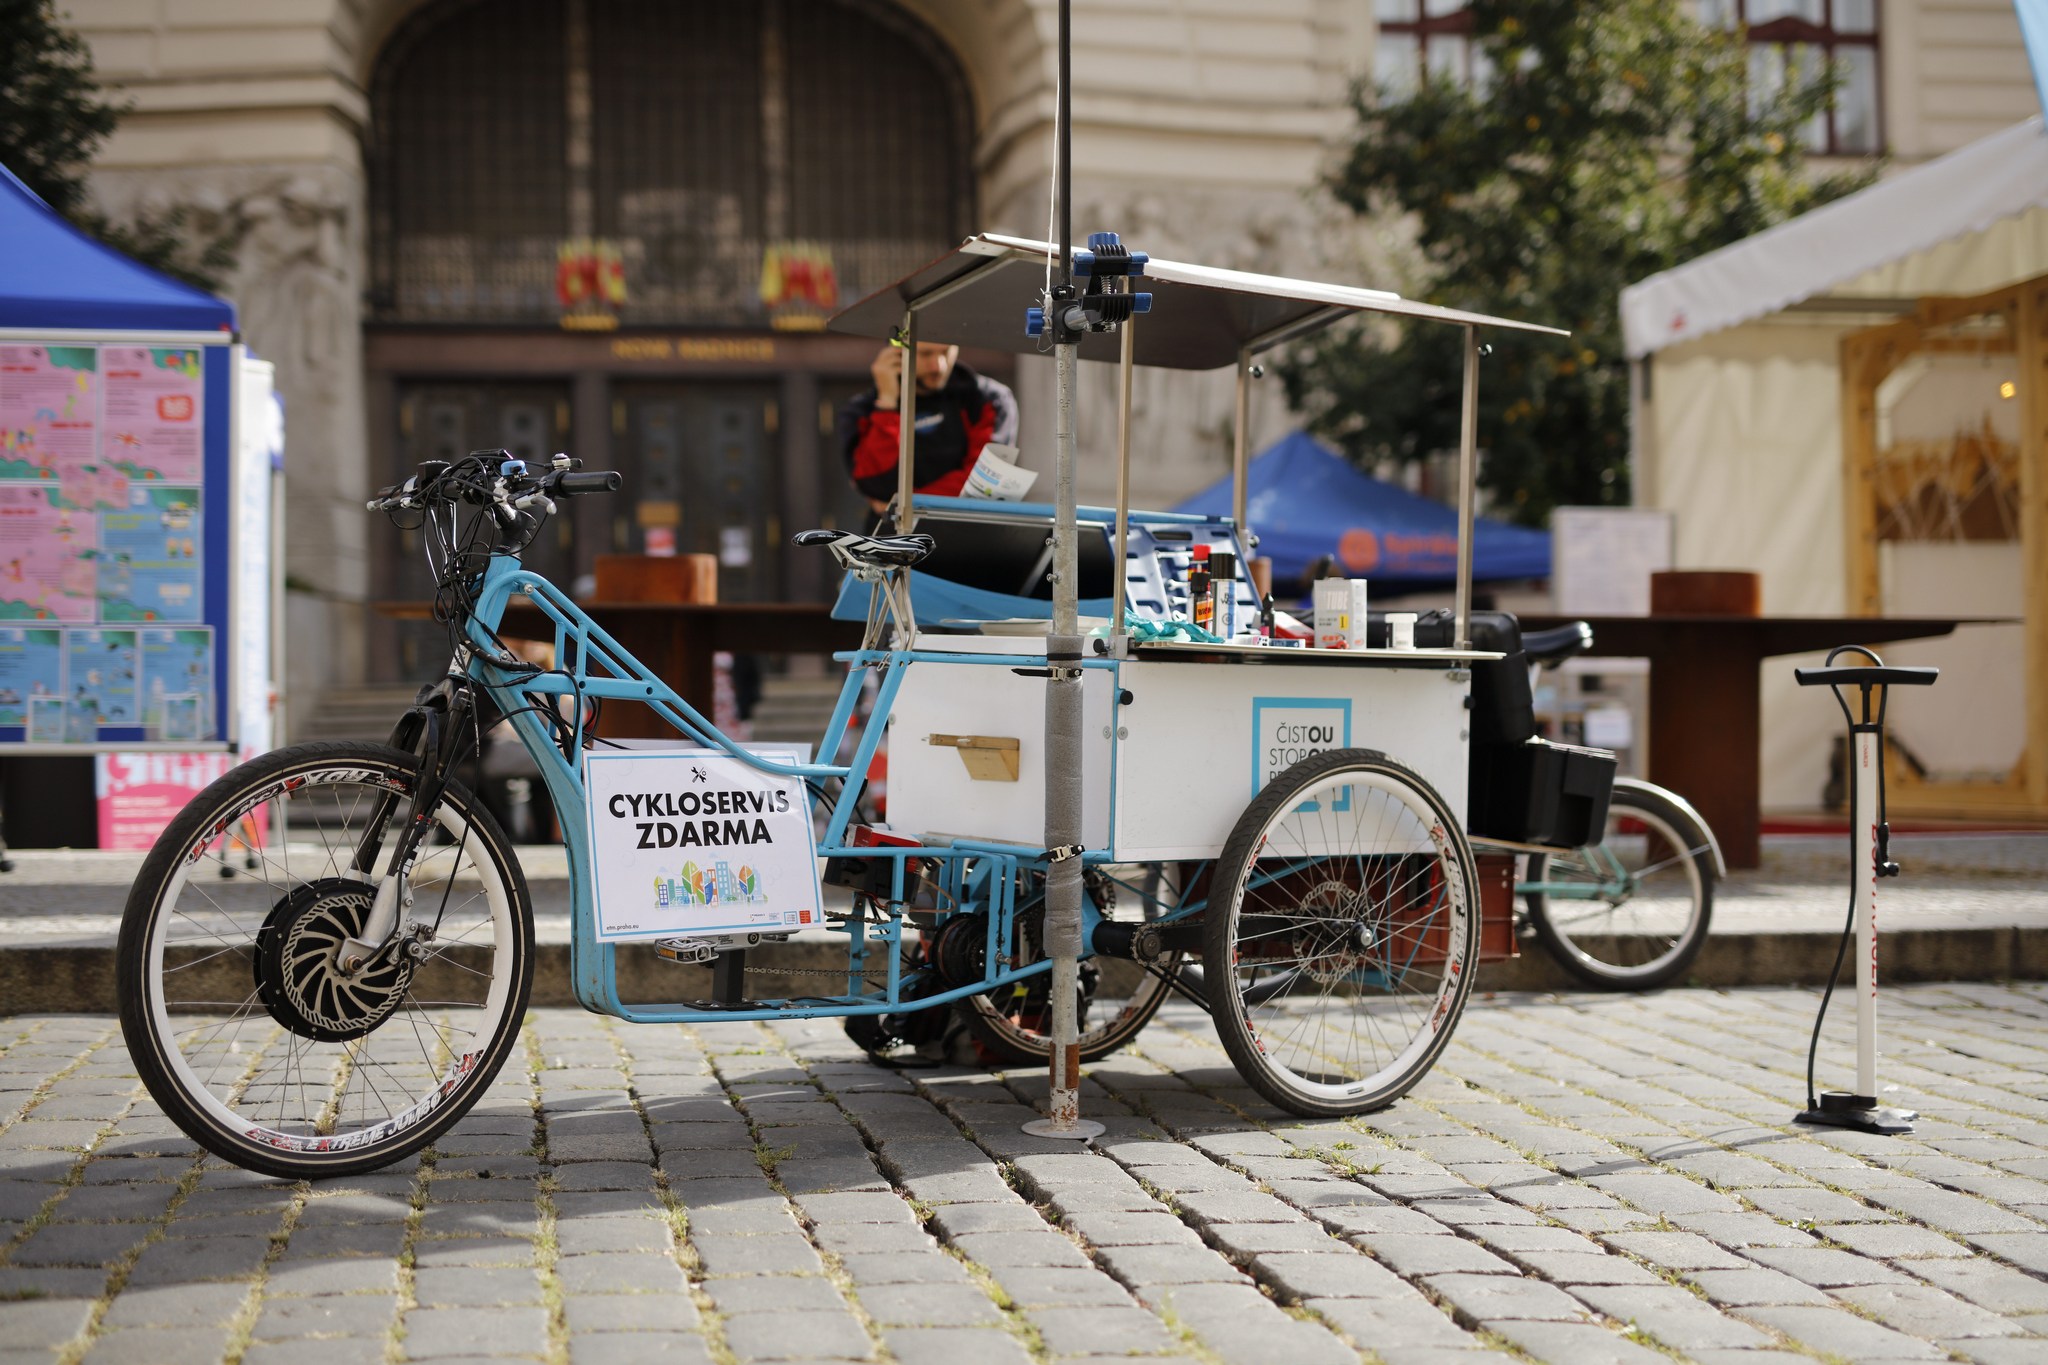 Pojízdný cykloservis zdarma - Náměstí Republiky